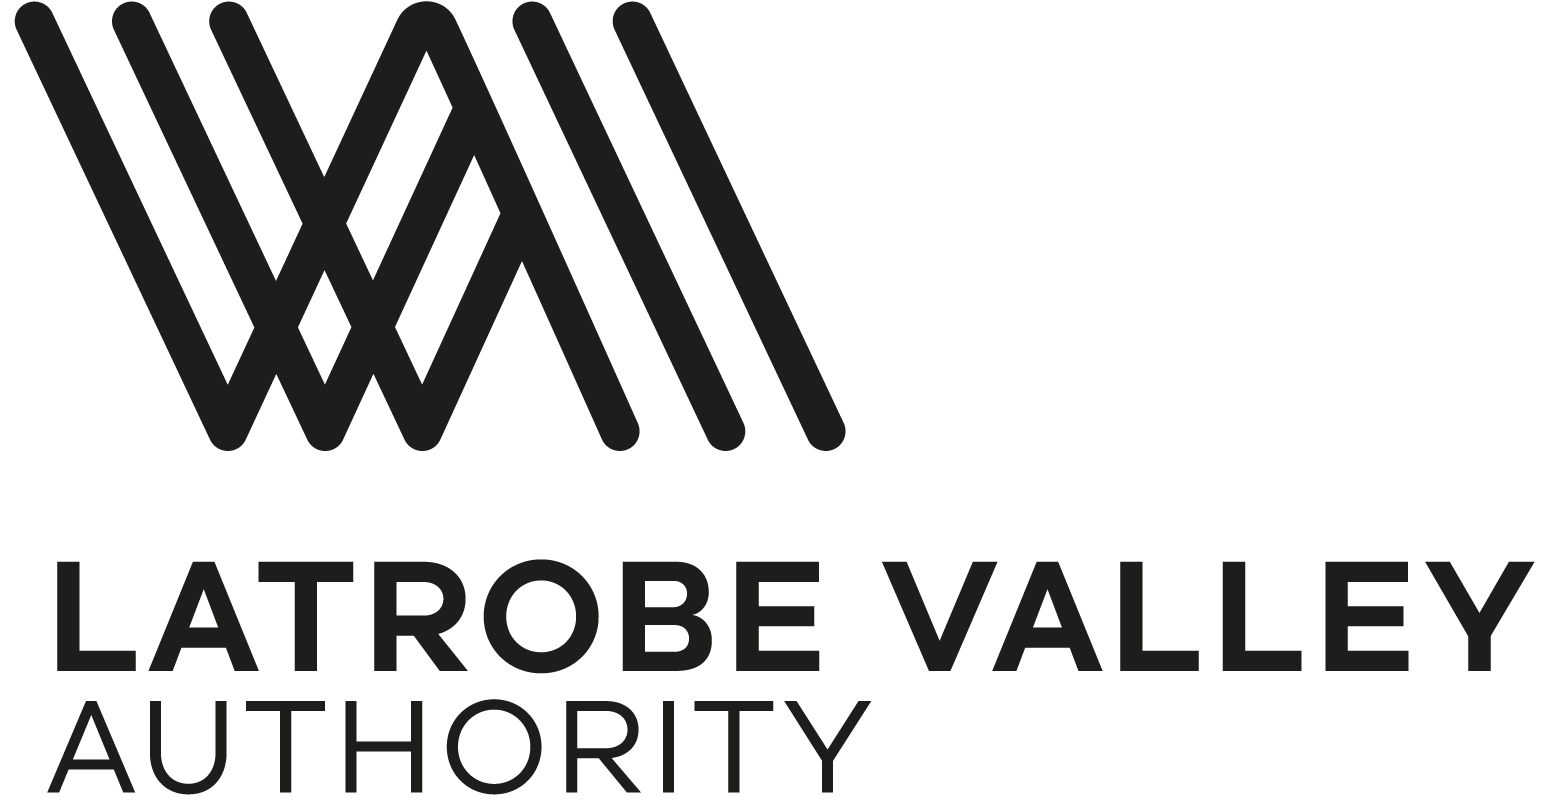 Latrobe Valley Authority logo